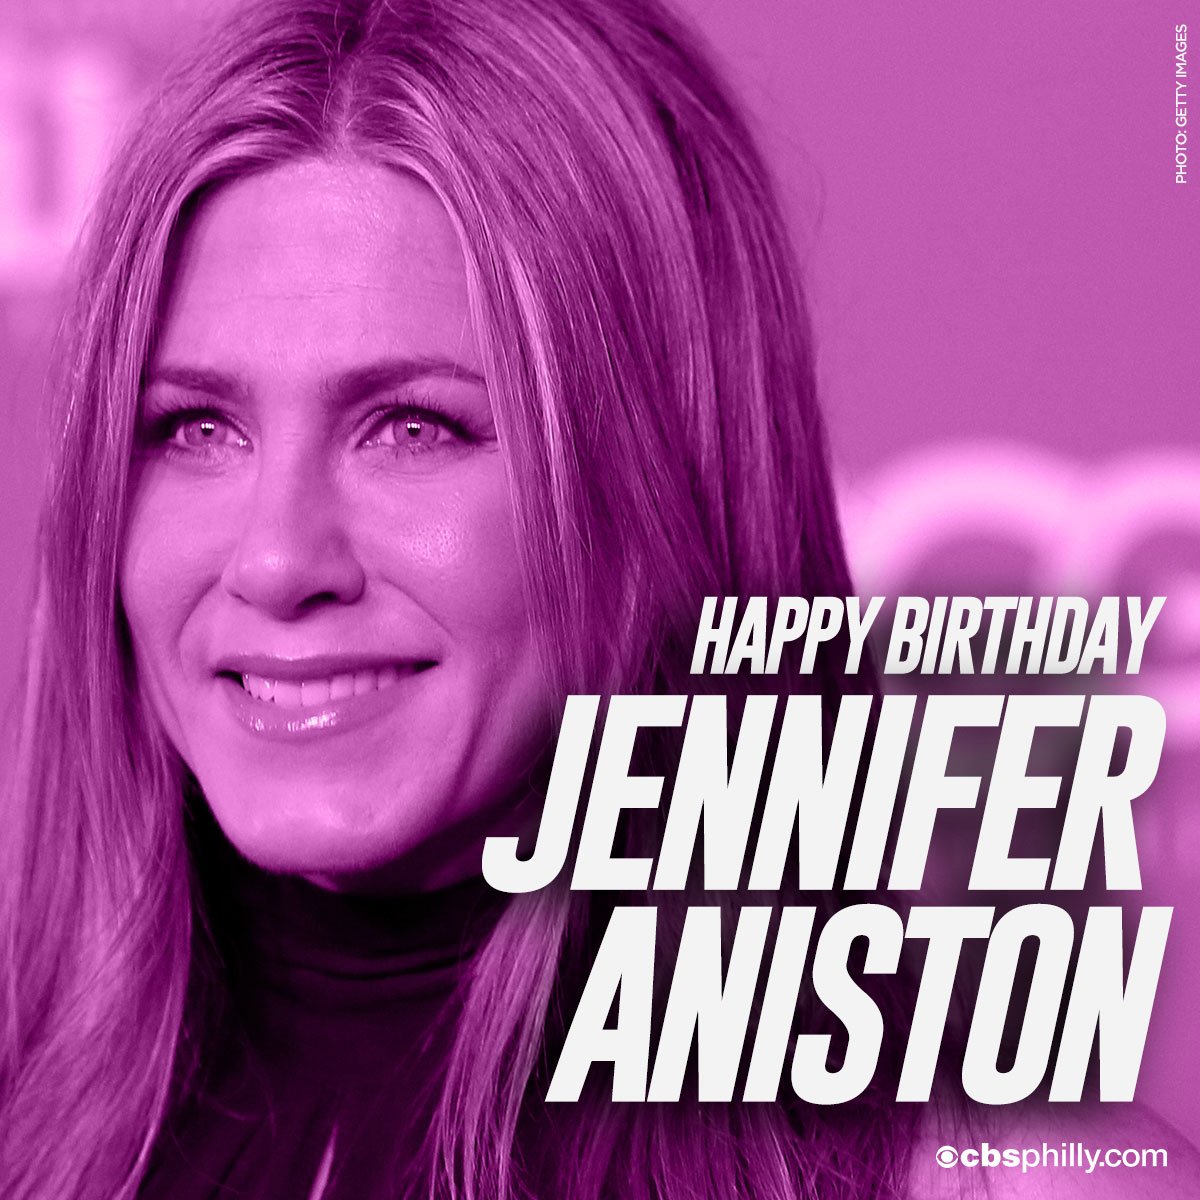  HAPPY BIRTHDAY Jennifer Aniston! 